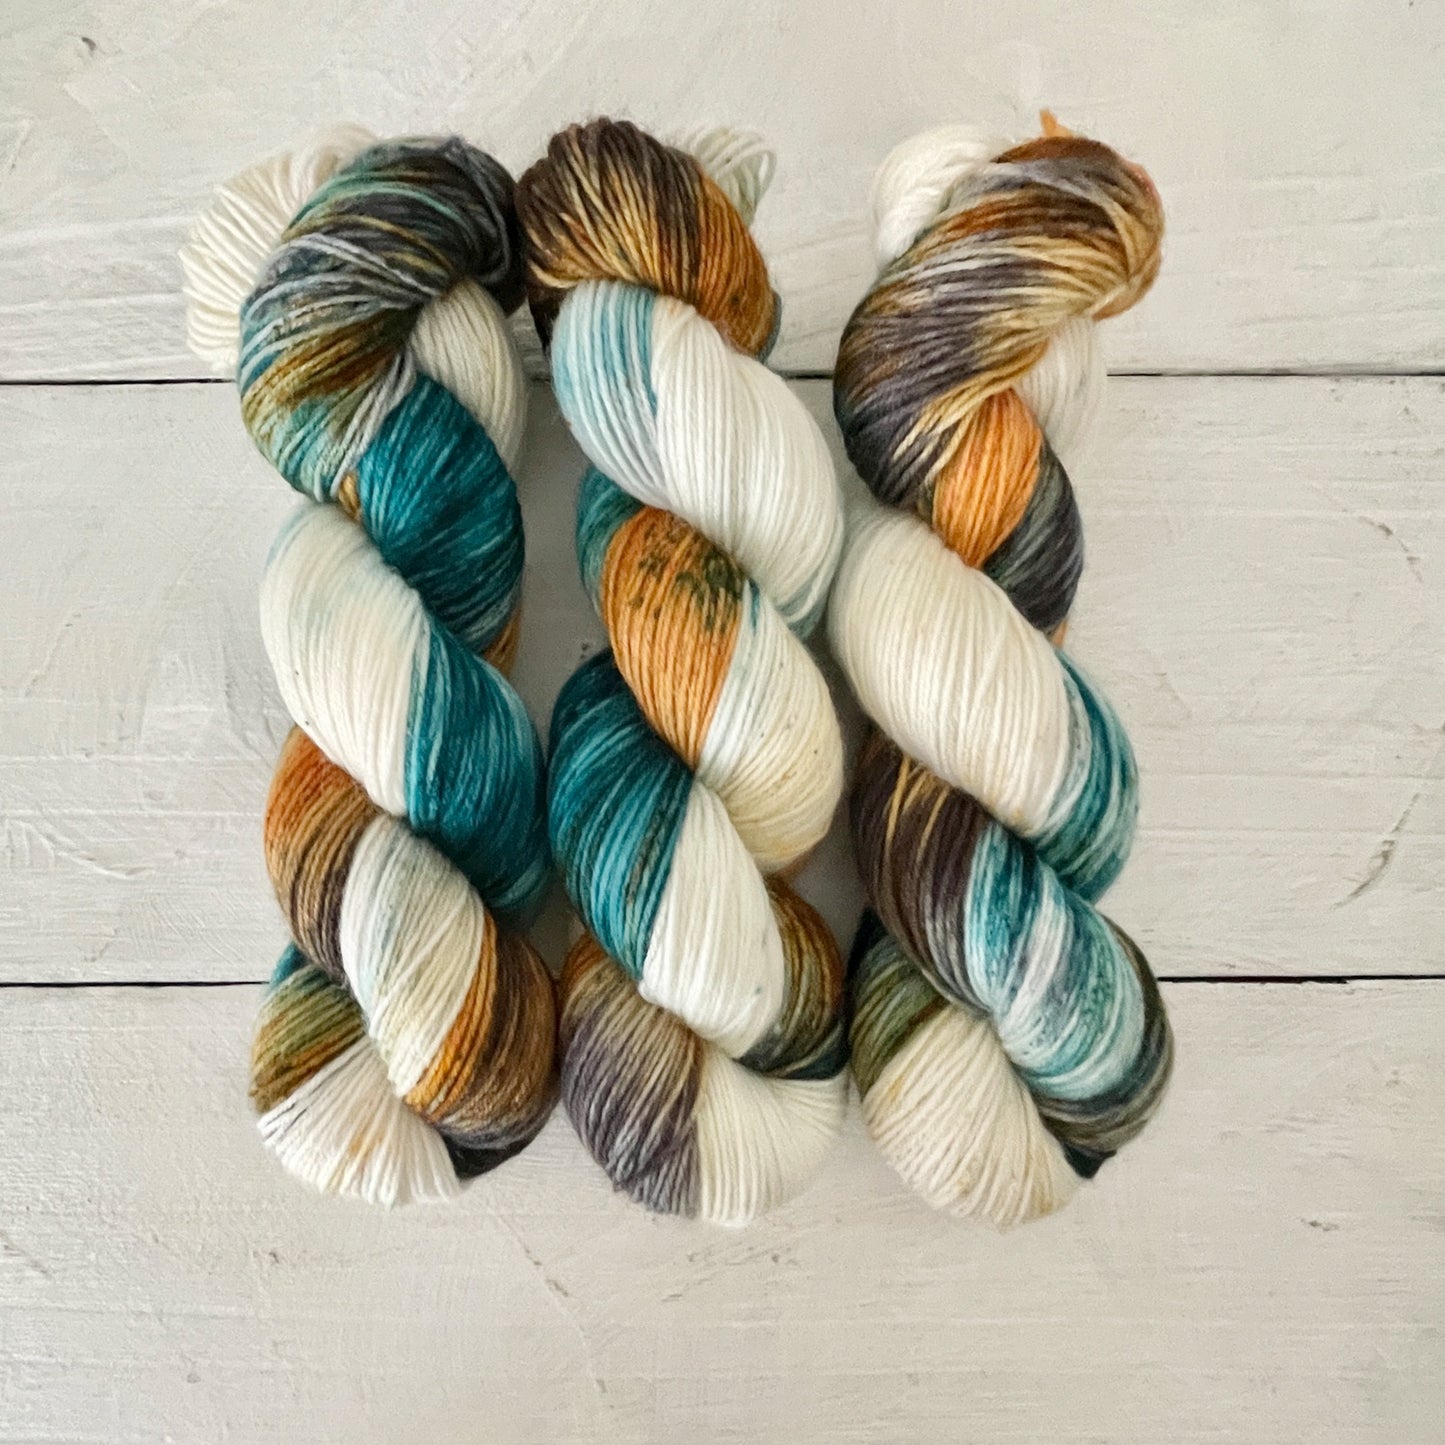 Hand-dyed yarn No.205 sock yarn "Gretchen am Spinnrade"